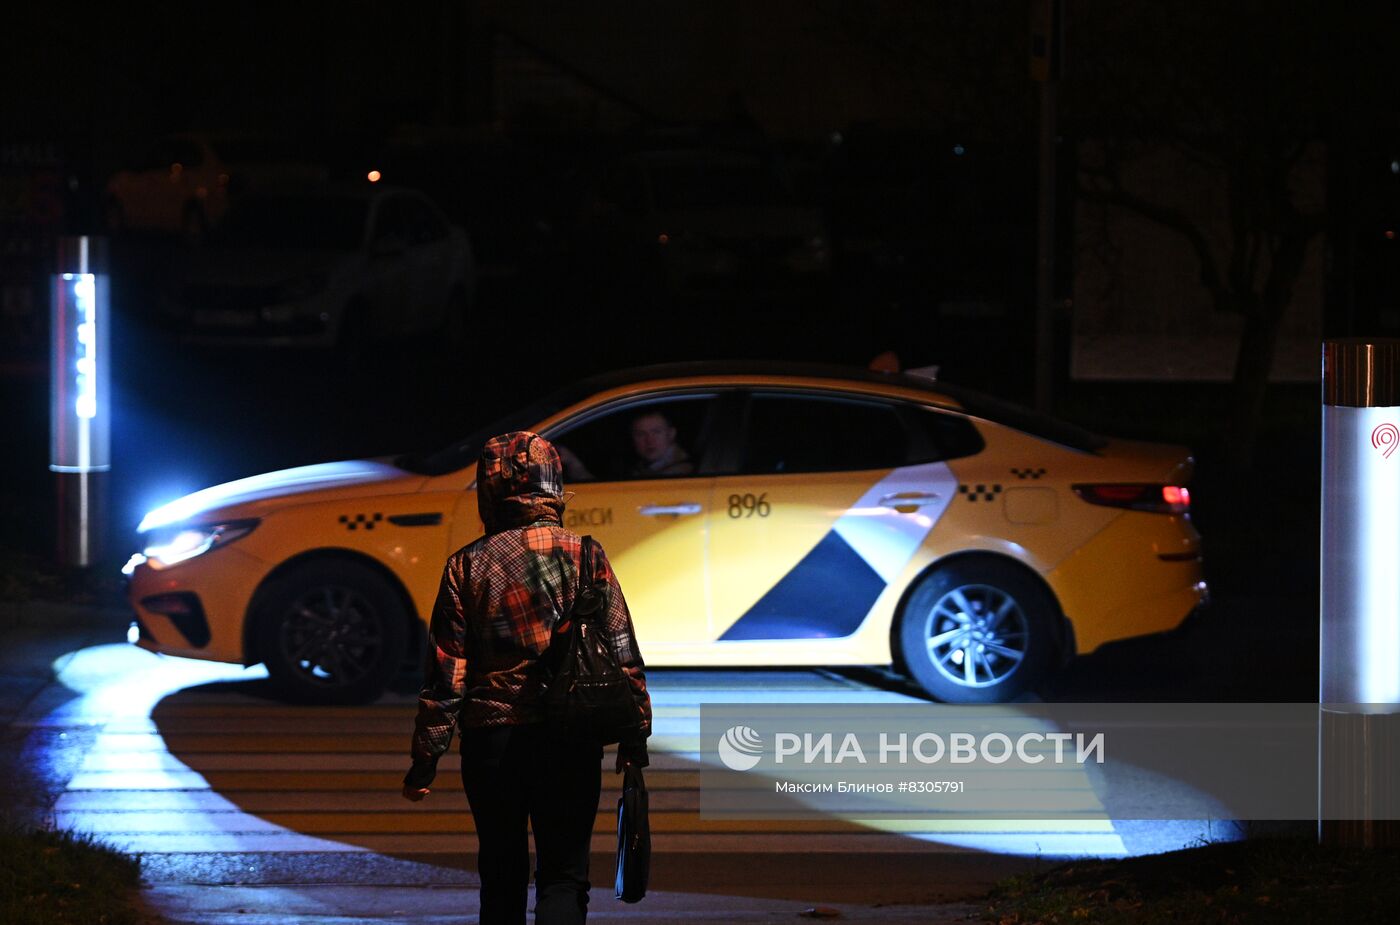 Новый тип подсветки пешеходного перехода установили в Москве